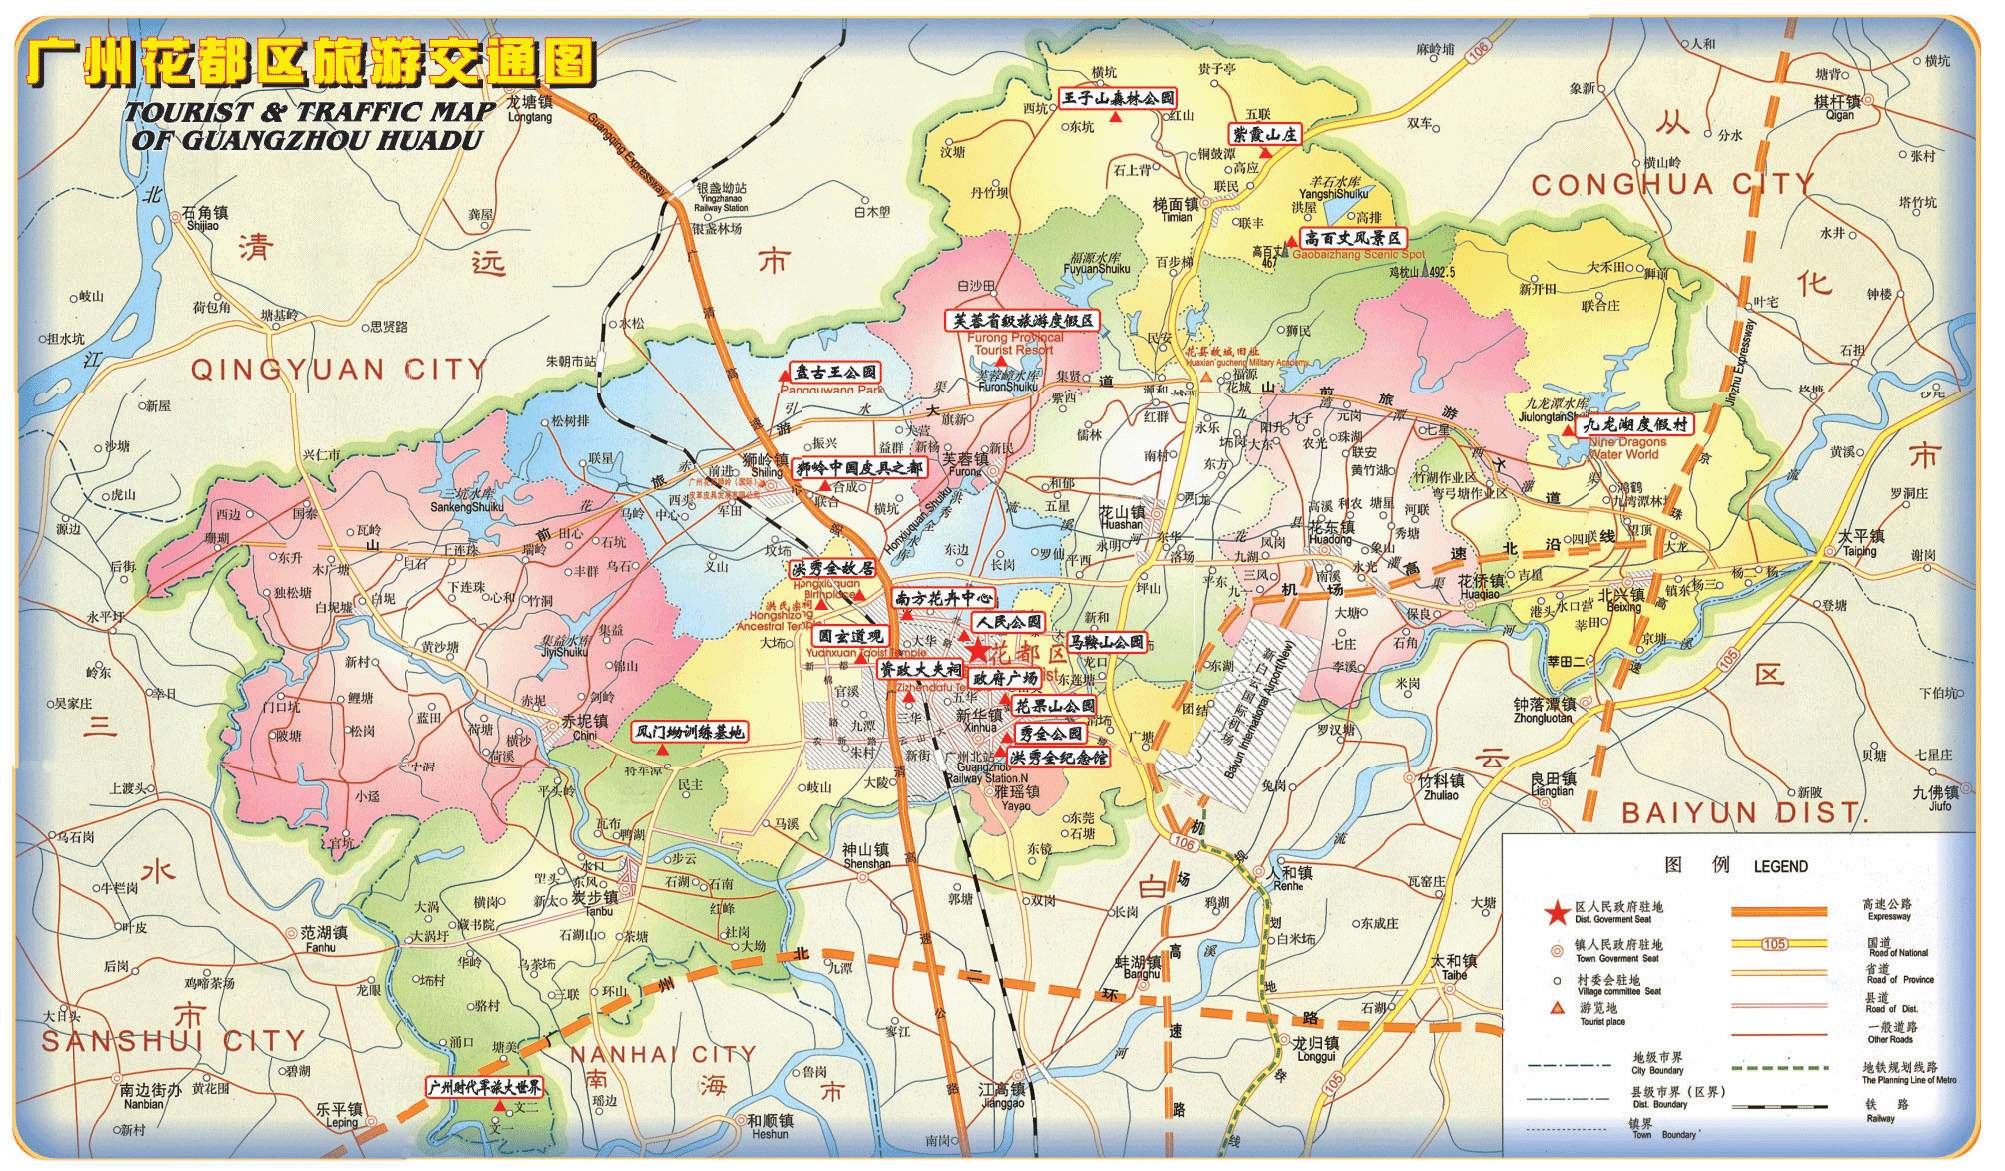 广州花都区旅游交通图--本版所分享之地图,目的仅限於图片